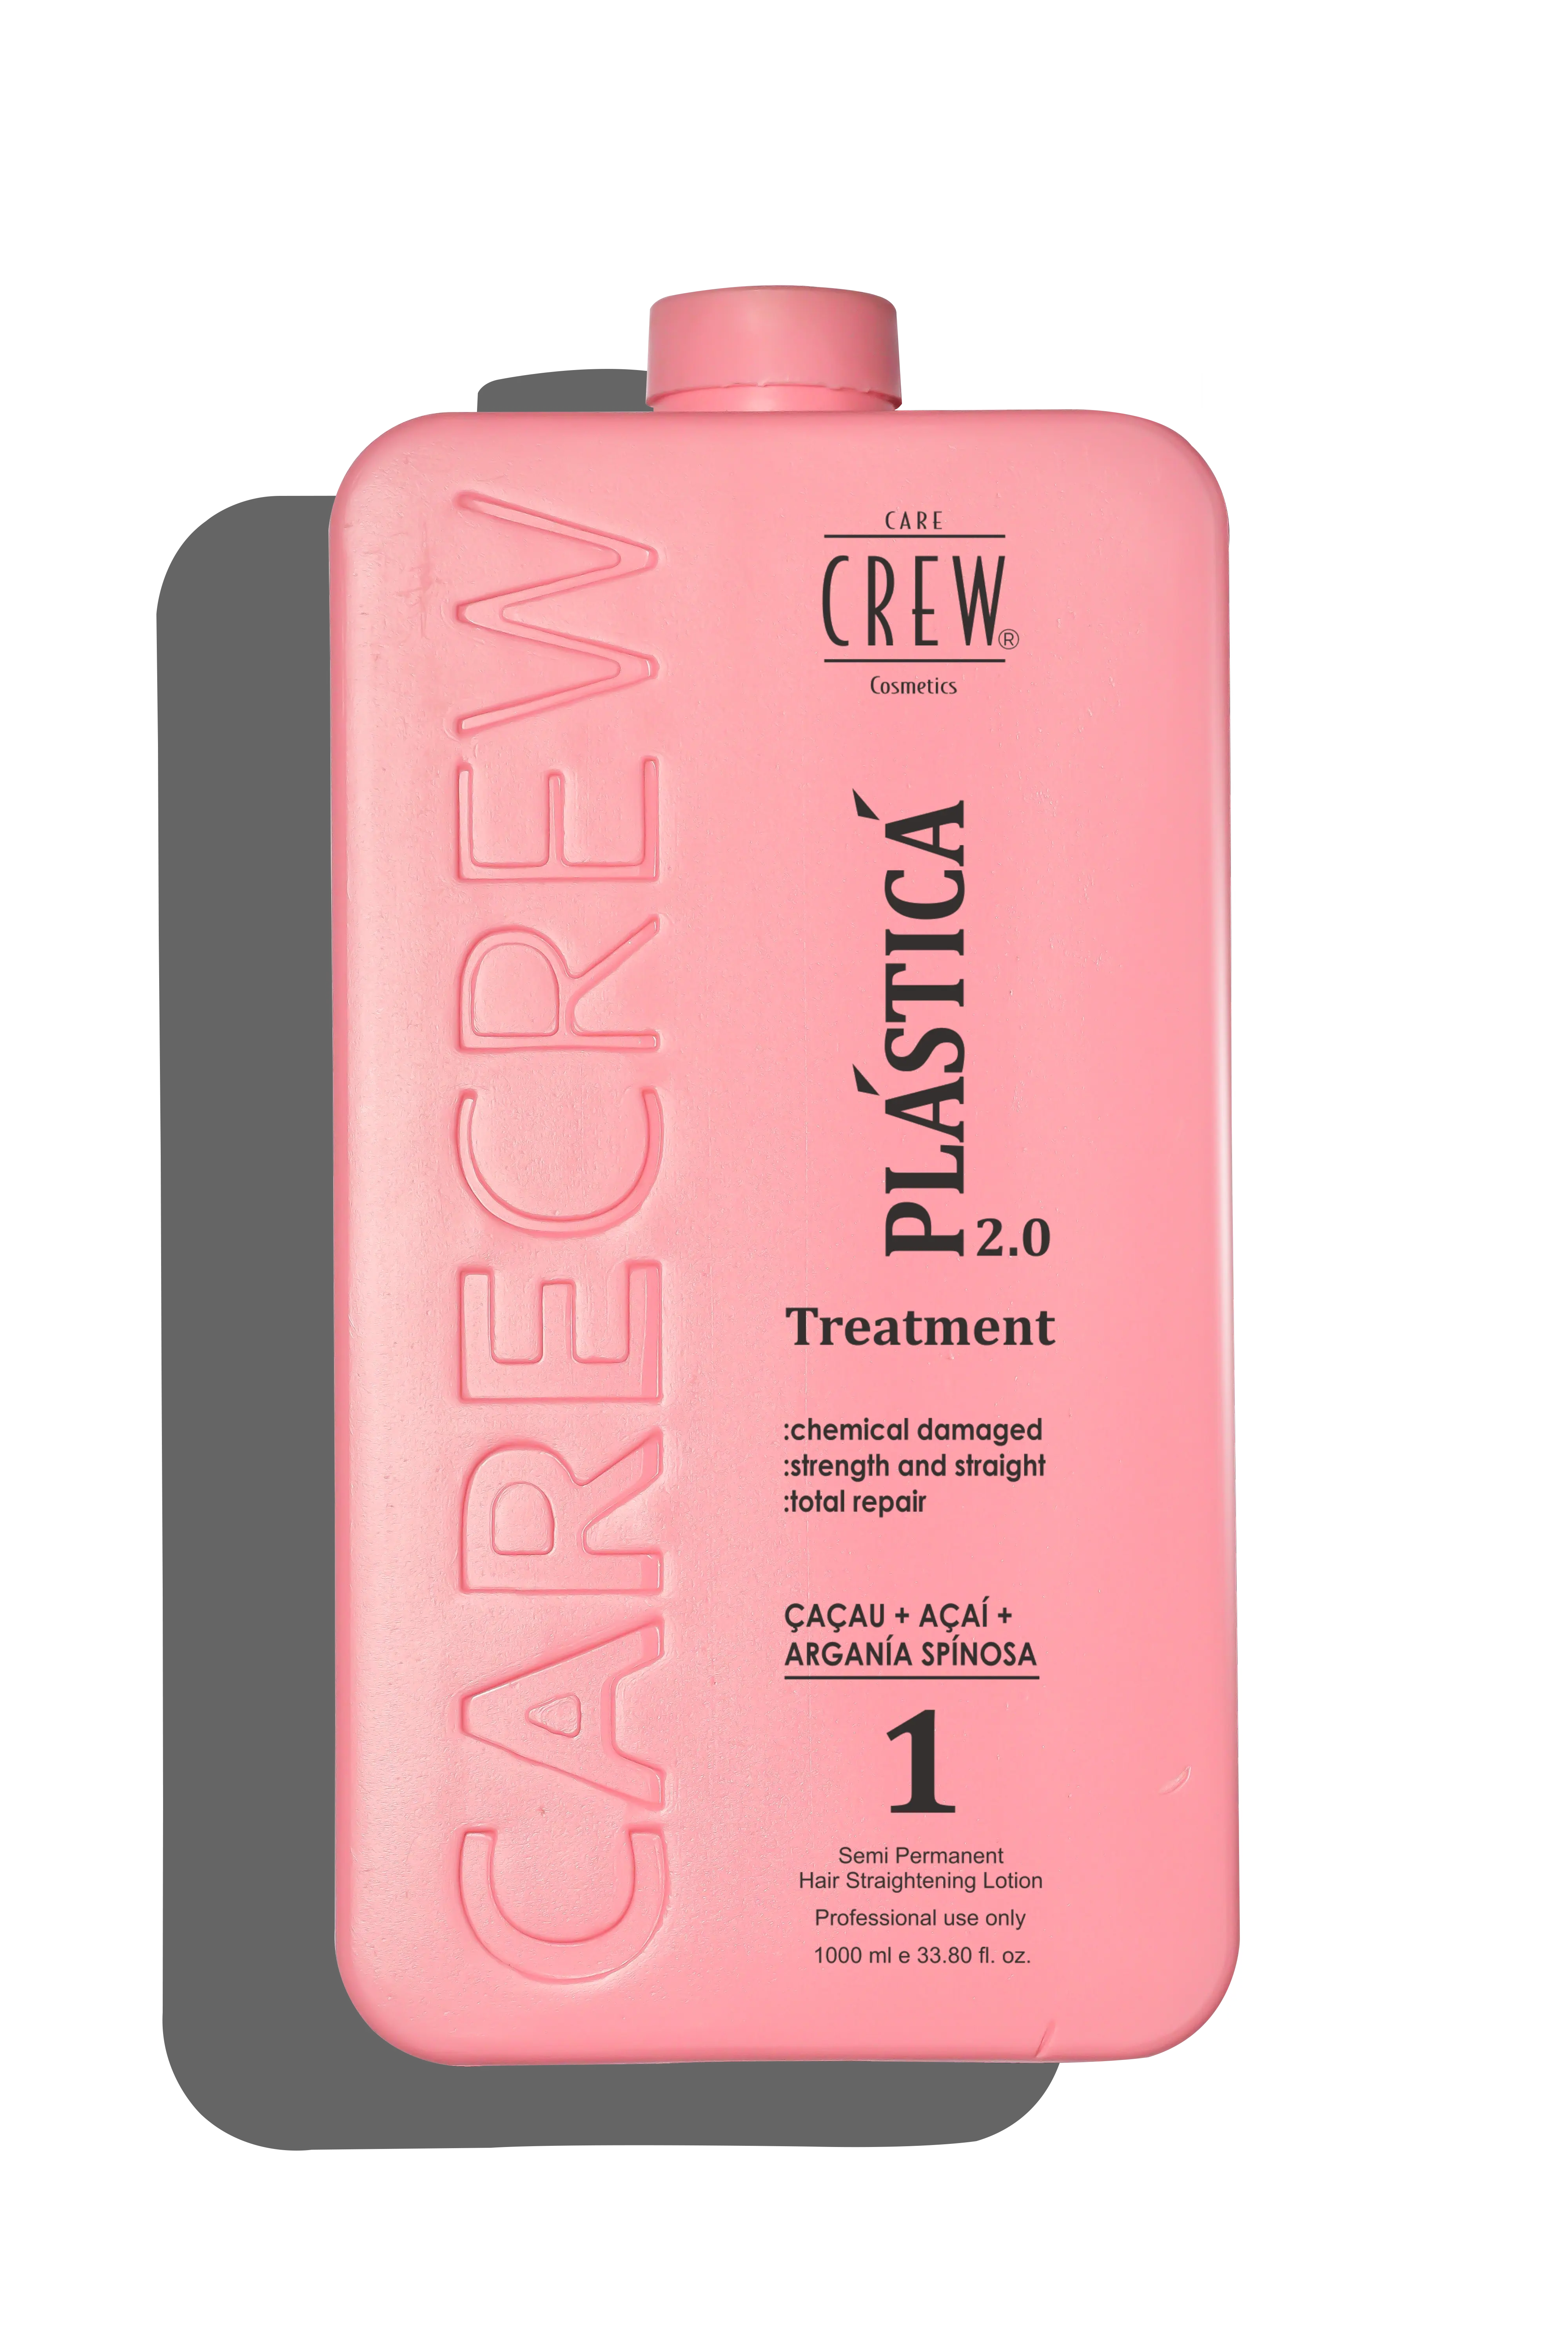 CareCrew Nanoplastica Hair Treatment 